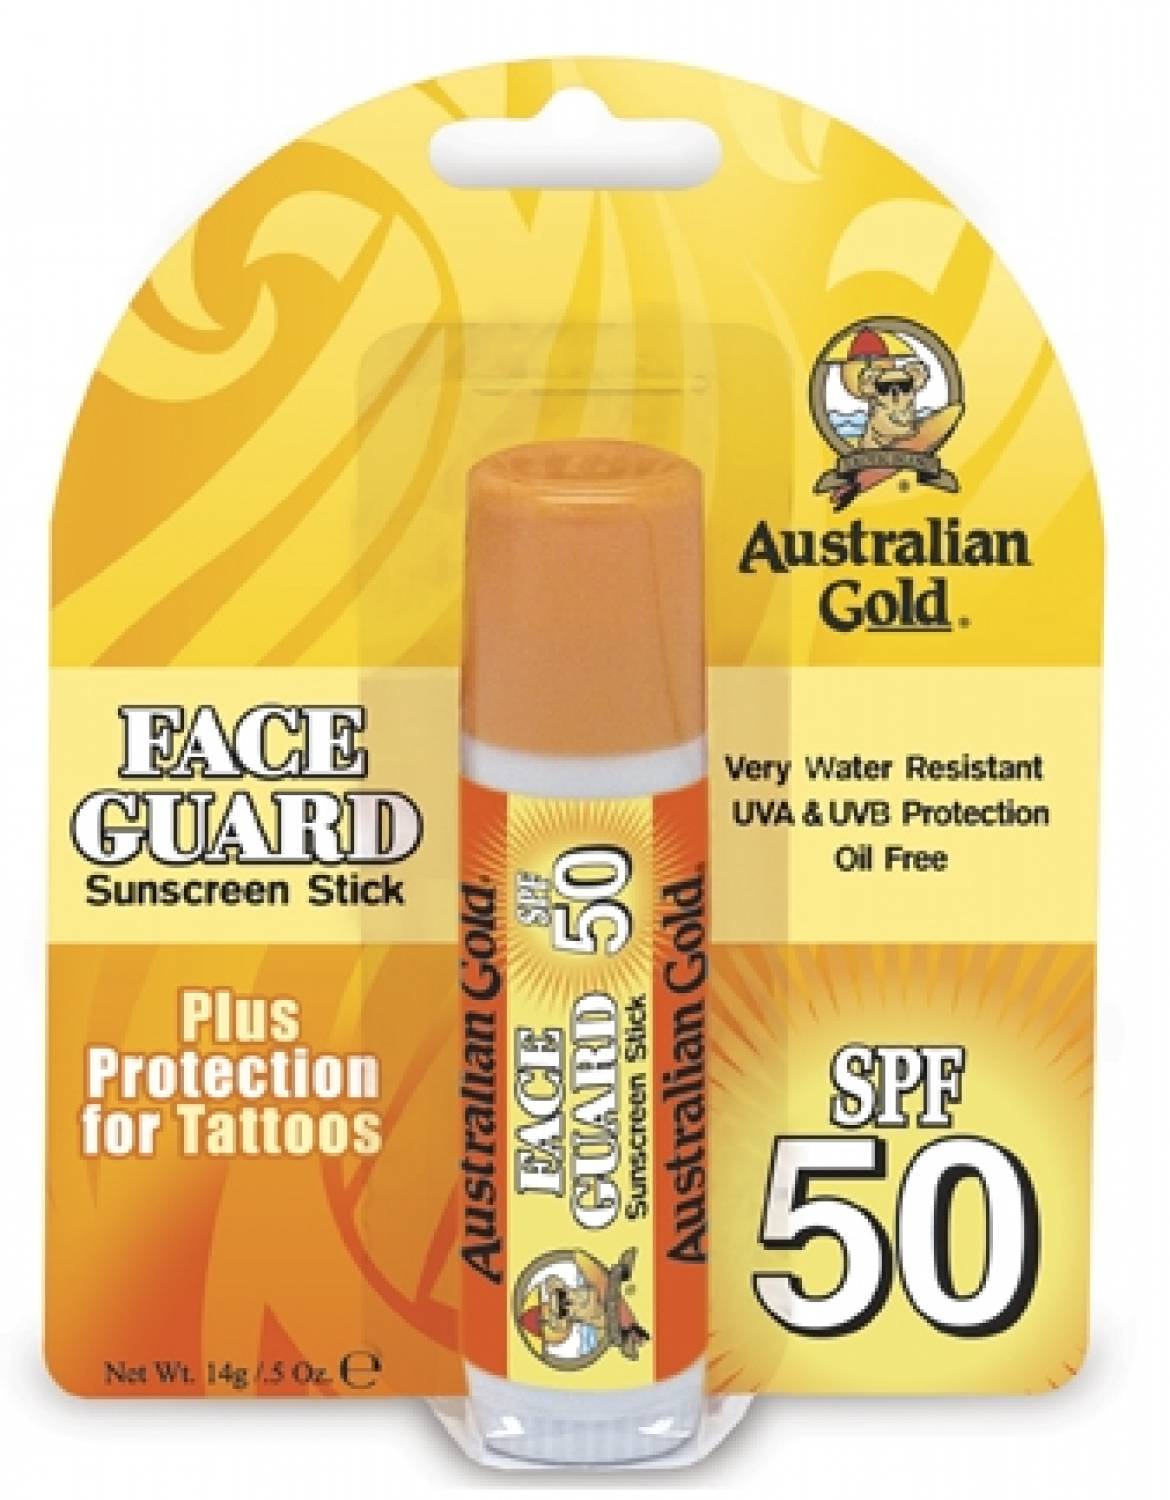 Australian Gold SPF 50 Maschera di protezione del bastone, grande magazzino!